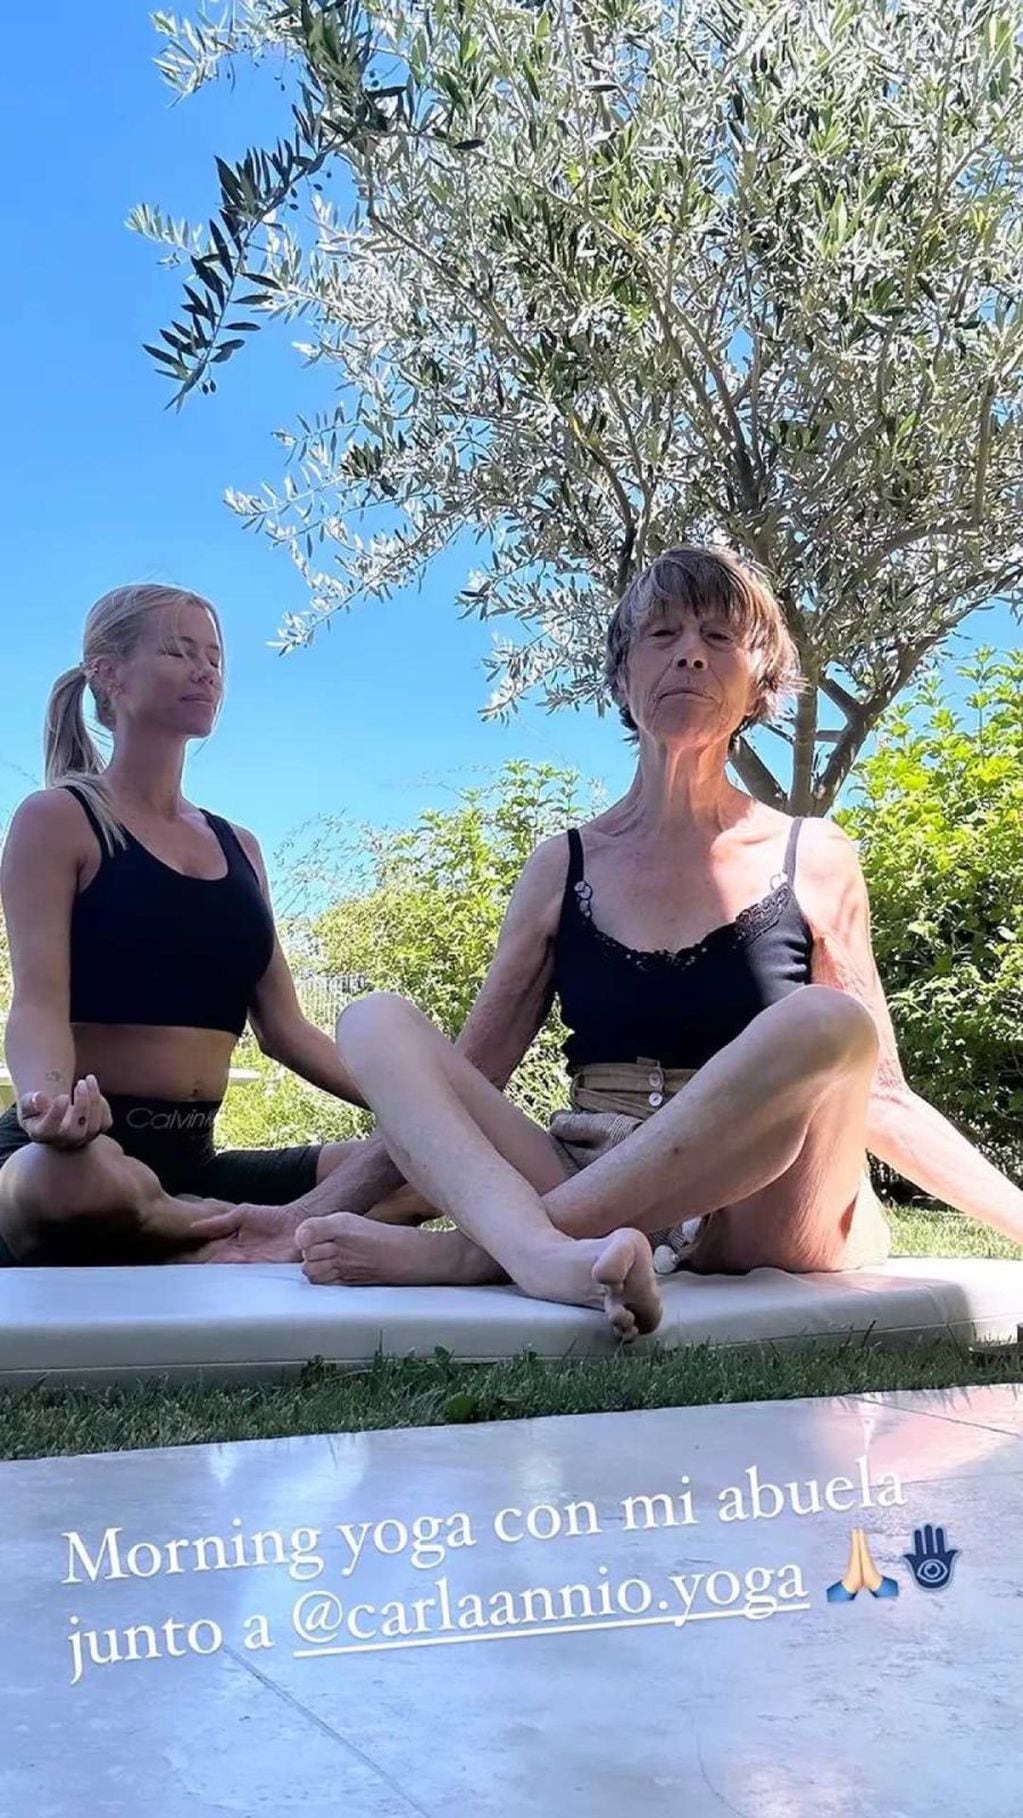 Nicole Neumann y su abuela realizando yoga